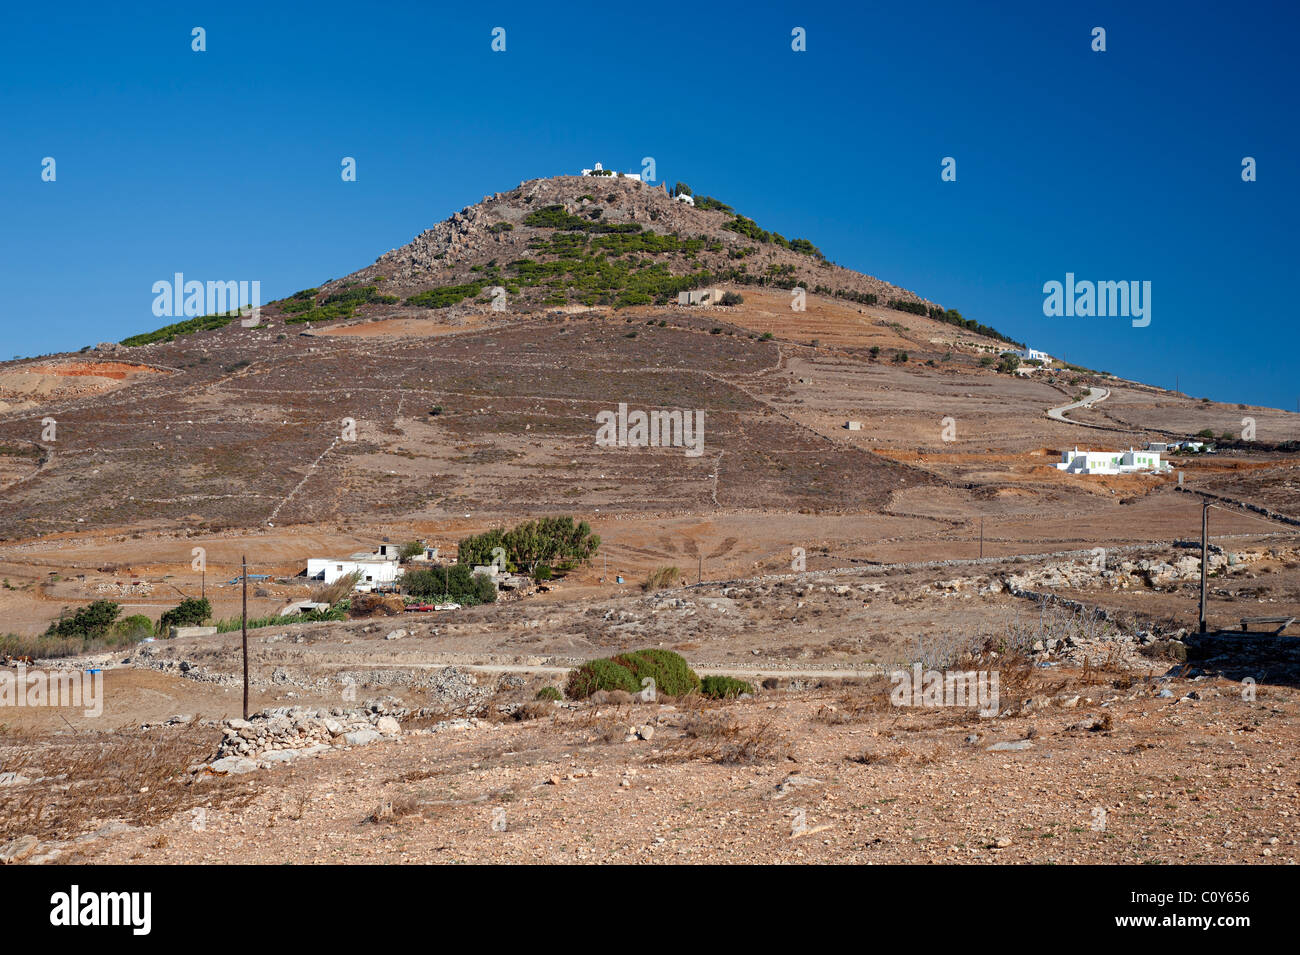 Hill sormontato da due piccole chiese a secco di campagna nei pressi di Marmara, sul Greco Cyclade isola di Paros. Foto Stock